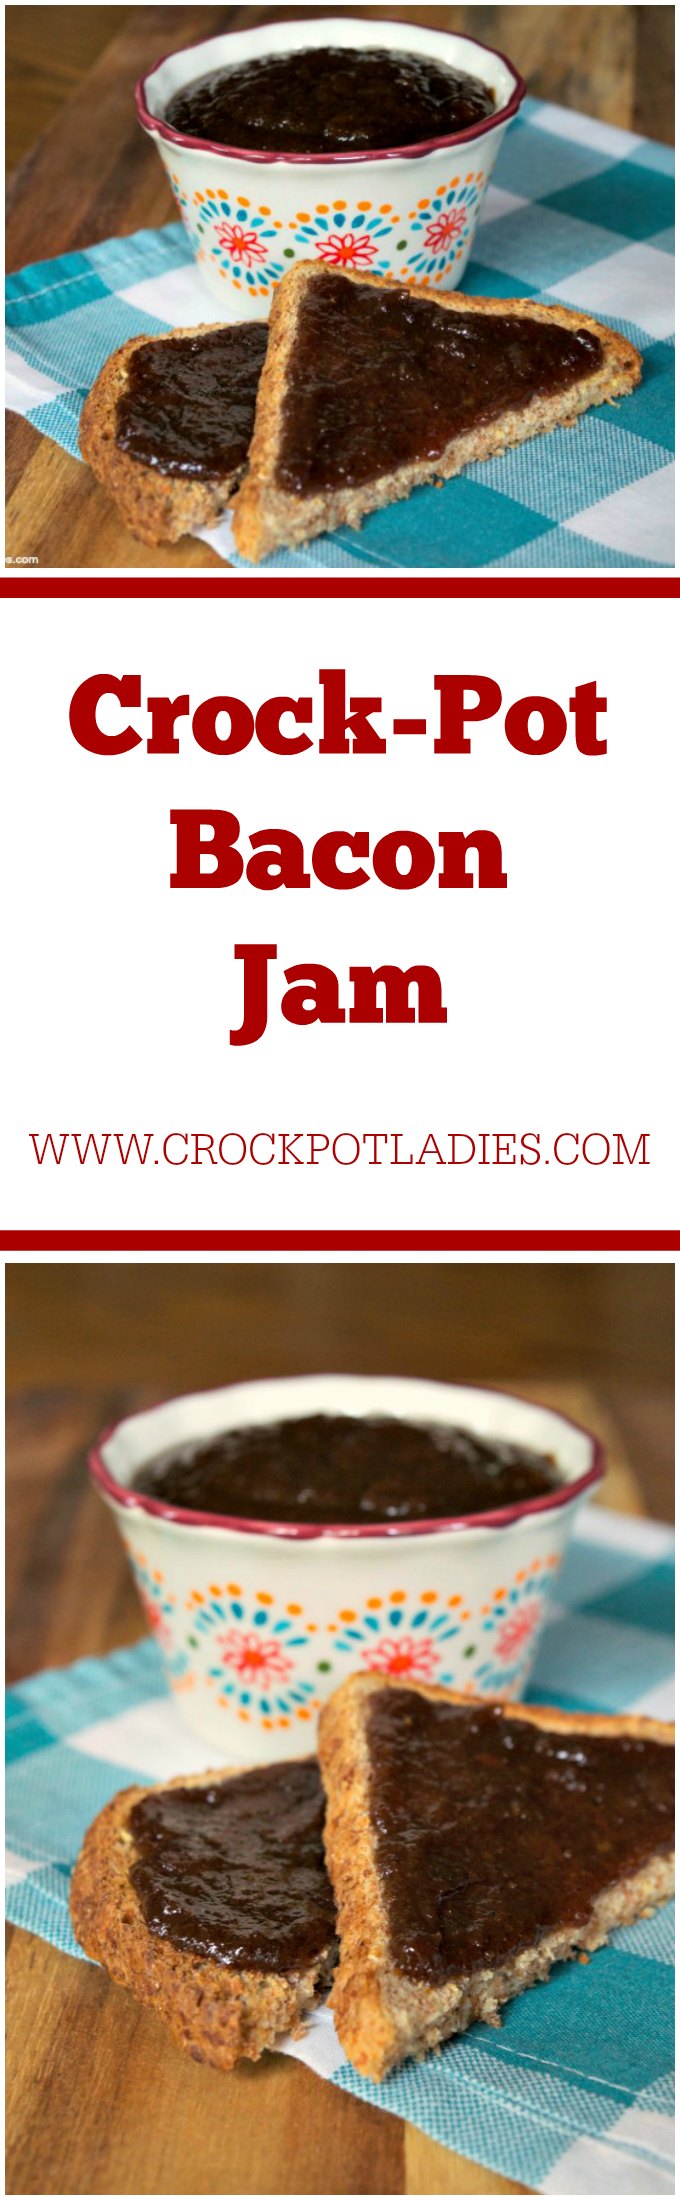 Crock-Pot Bacon Jam